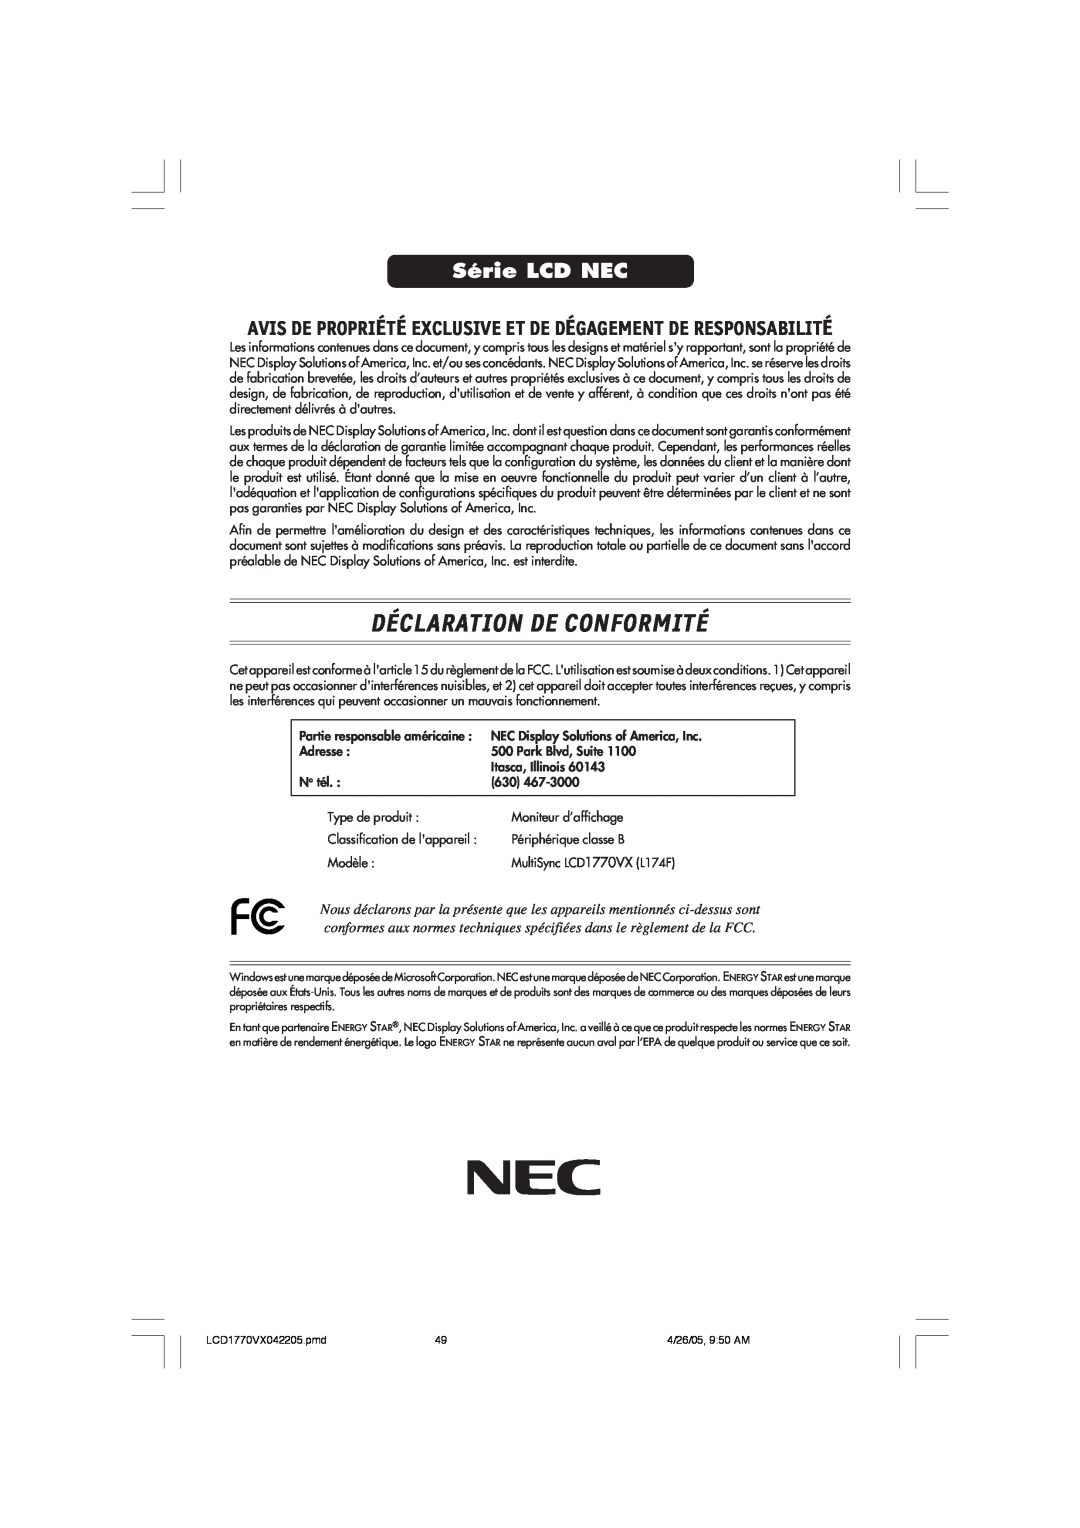 NEC LCD1770VX Déclaration De Conformité, Série LCD NEC, Avis De Propriété Exclusive Et De Dégagement De Responsabilité 